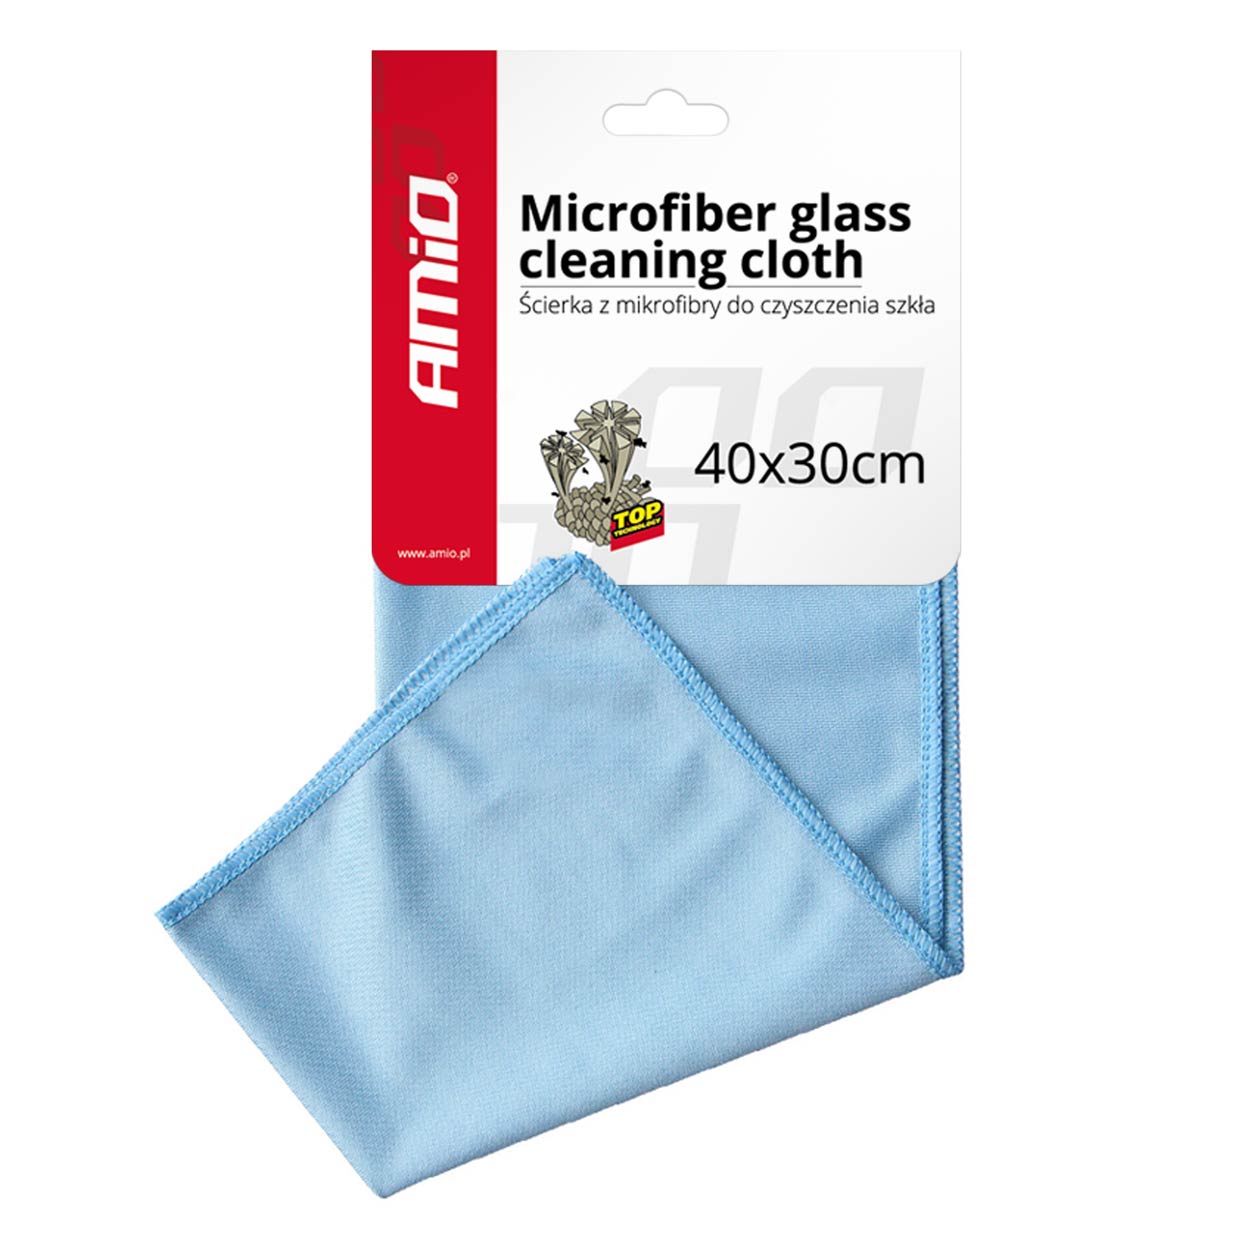 Paño de limpieza de microfibra para vidrio - spo-cs-disabled - spo-default - spo-disabled - spo-notify-me-disabled